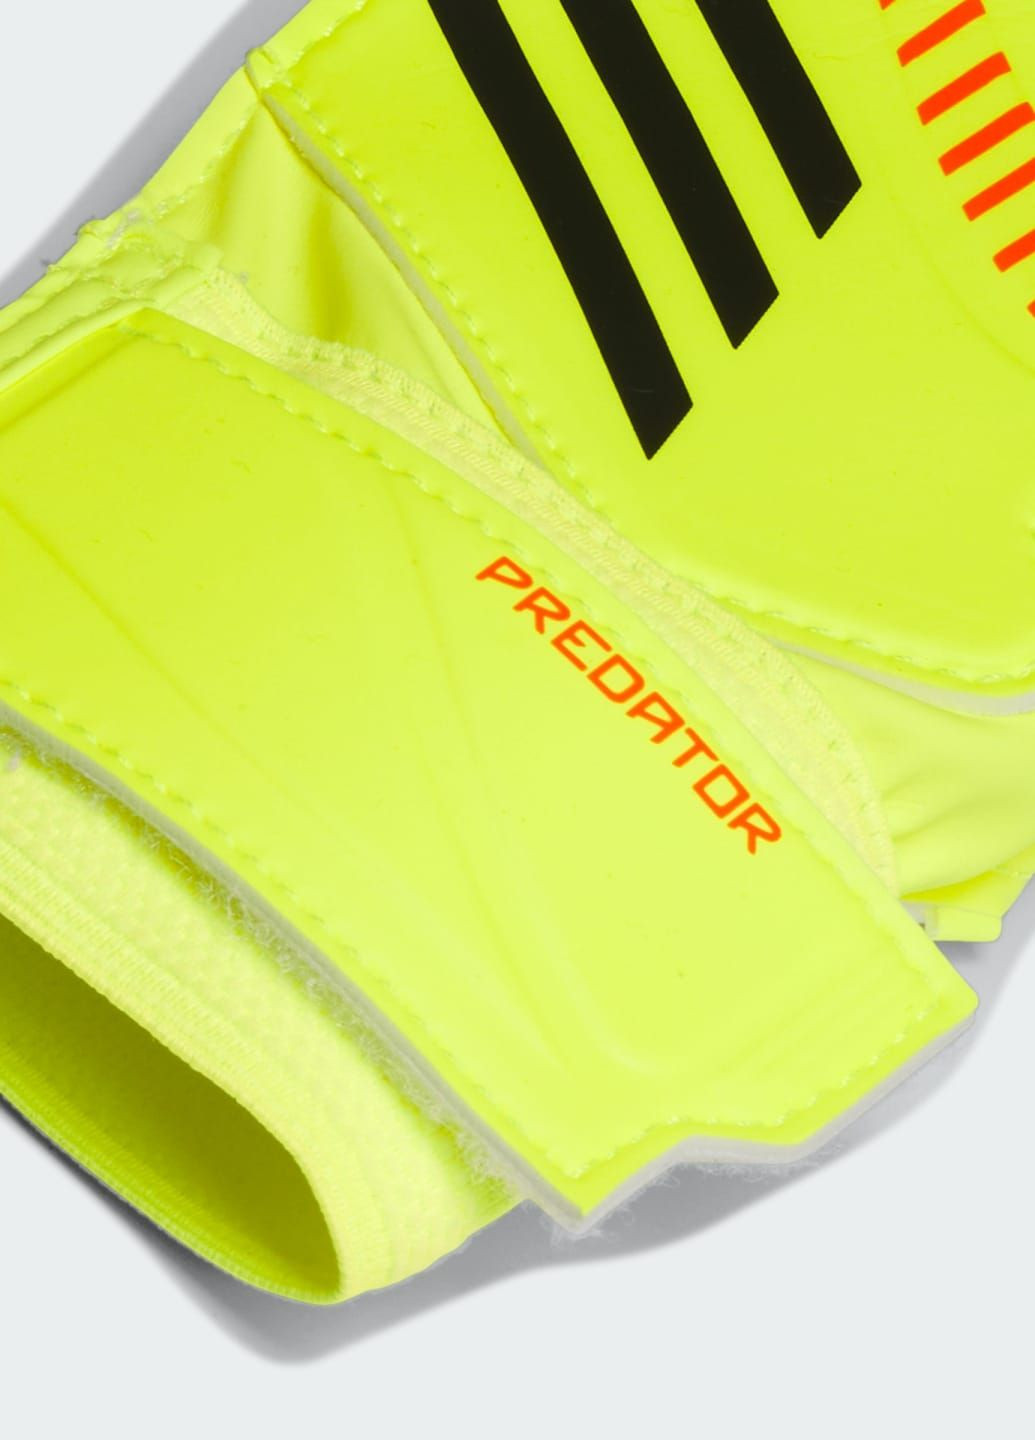 Вратарские перчатки Predator Training Kids adidas (288050022)